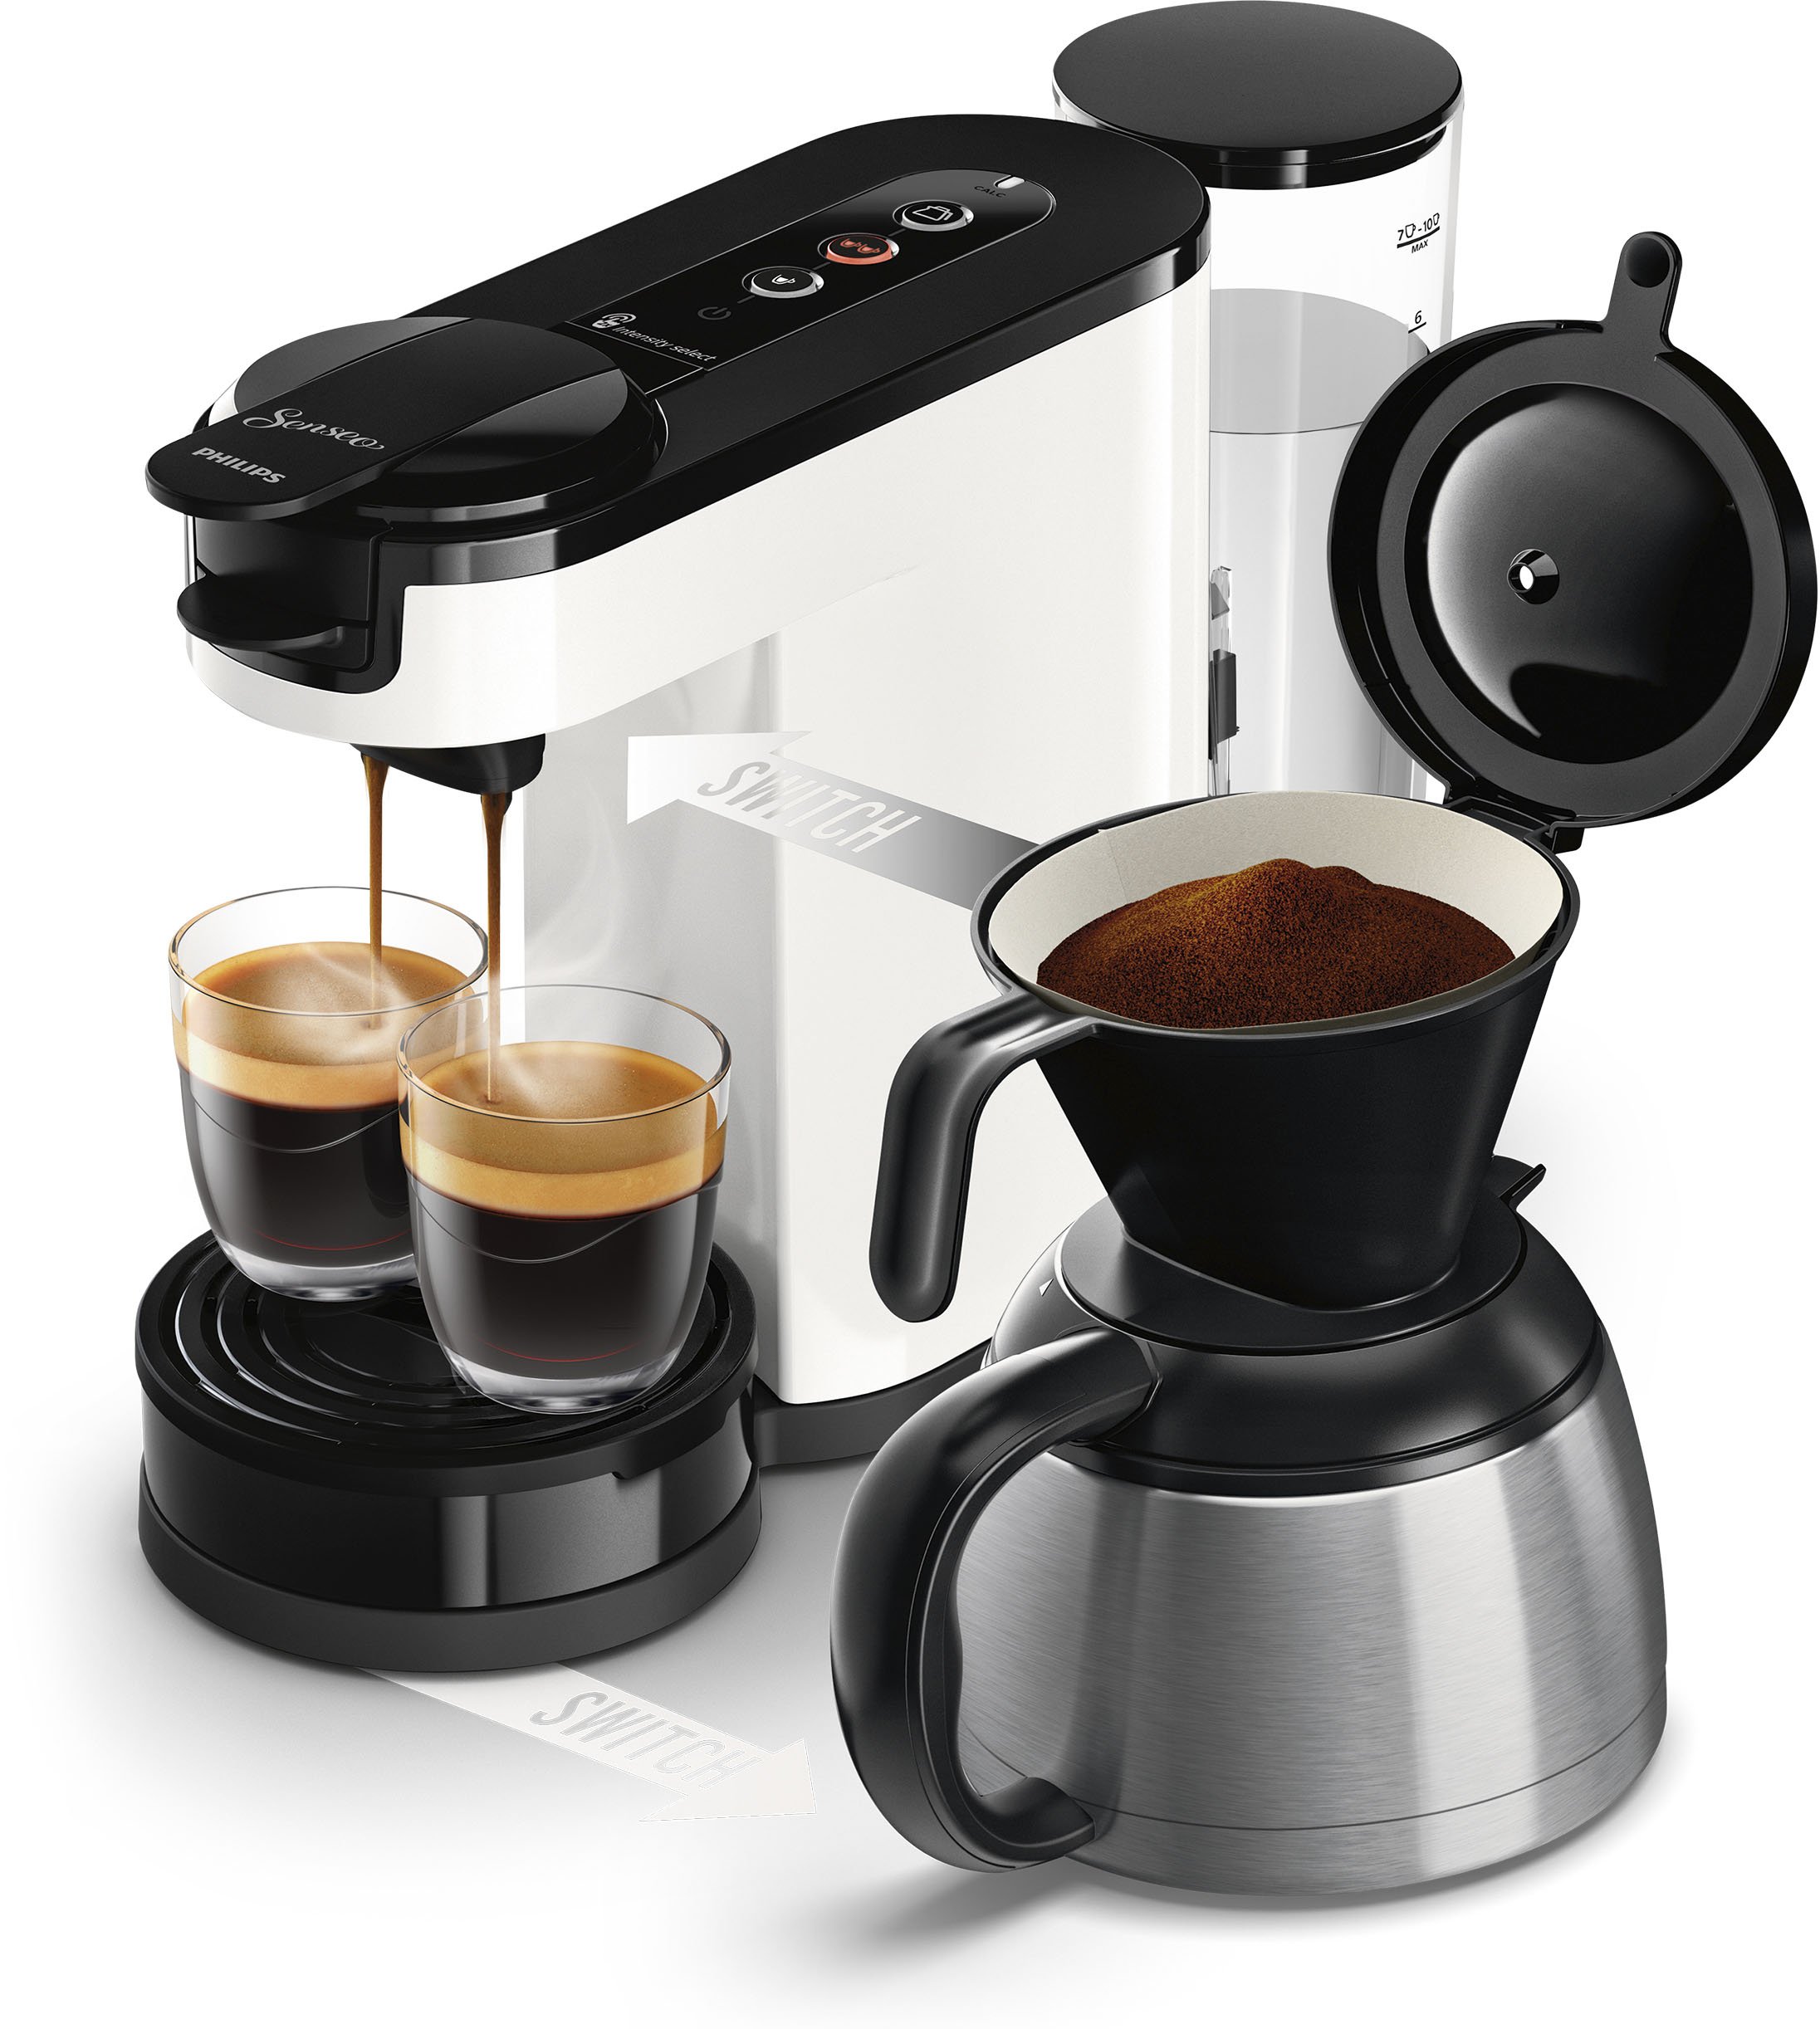 Philips Senseo Kaffeepadmaschine „Switch HD6592/04“, 1 l Kaffeekanne, inkl. Kaffeepaddose im Wert von 9,90 € UVP star white